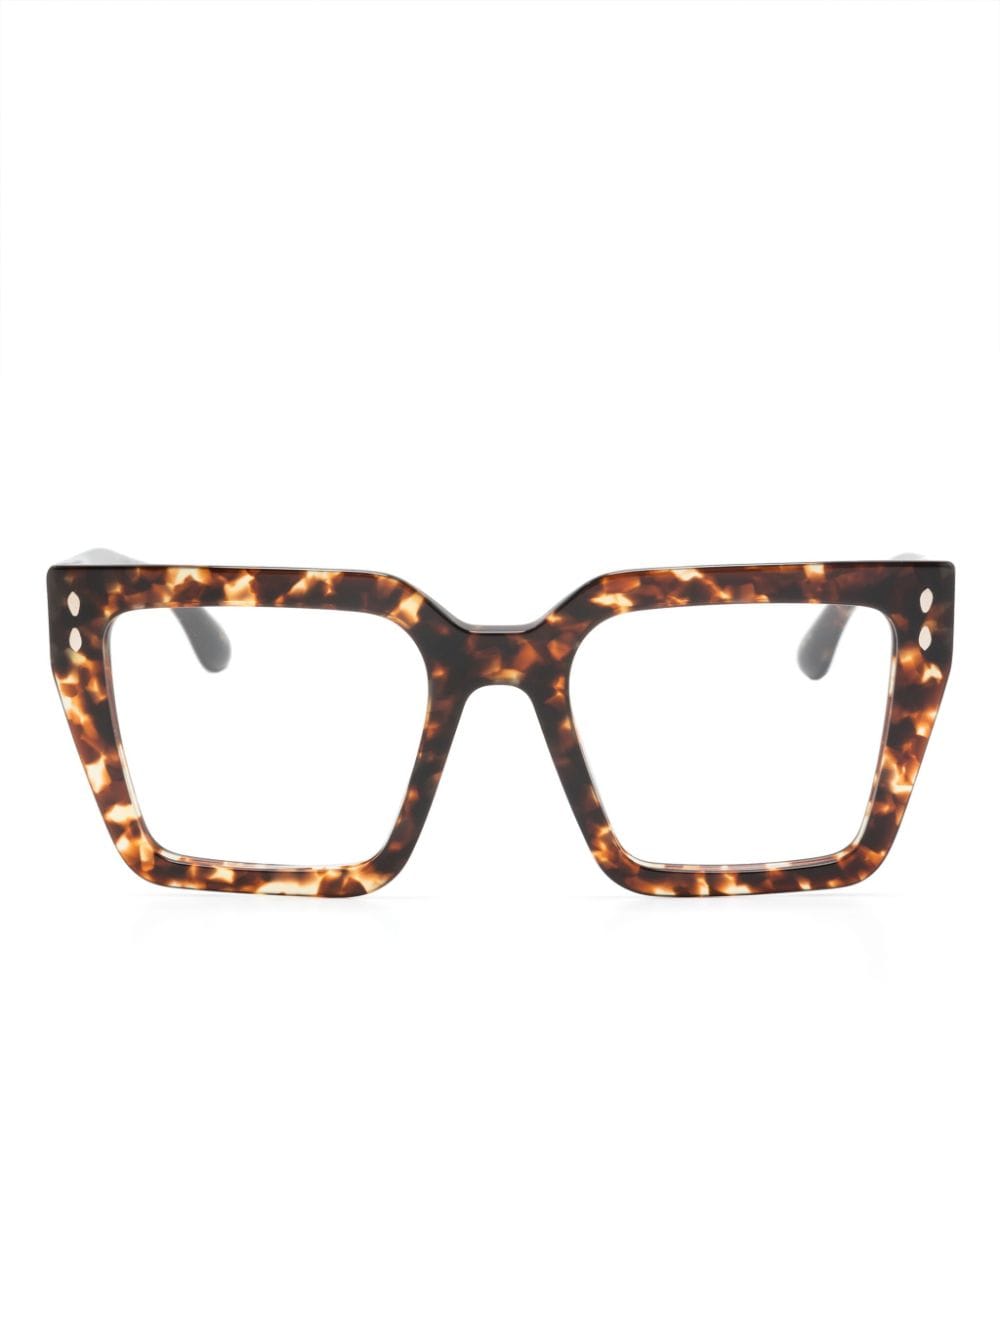 Isabel Marant Eyewear tortoiseshell square-frame sunglasses - Brown von Isabel Marant Eyewear